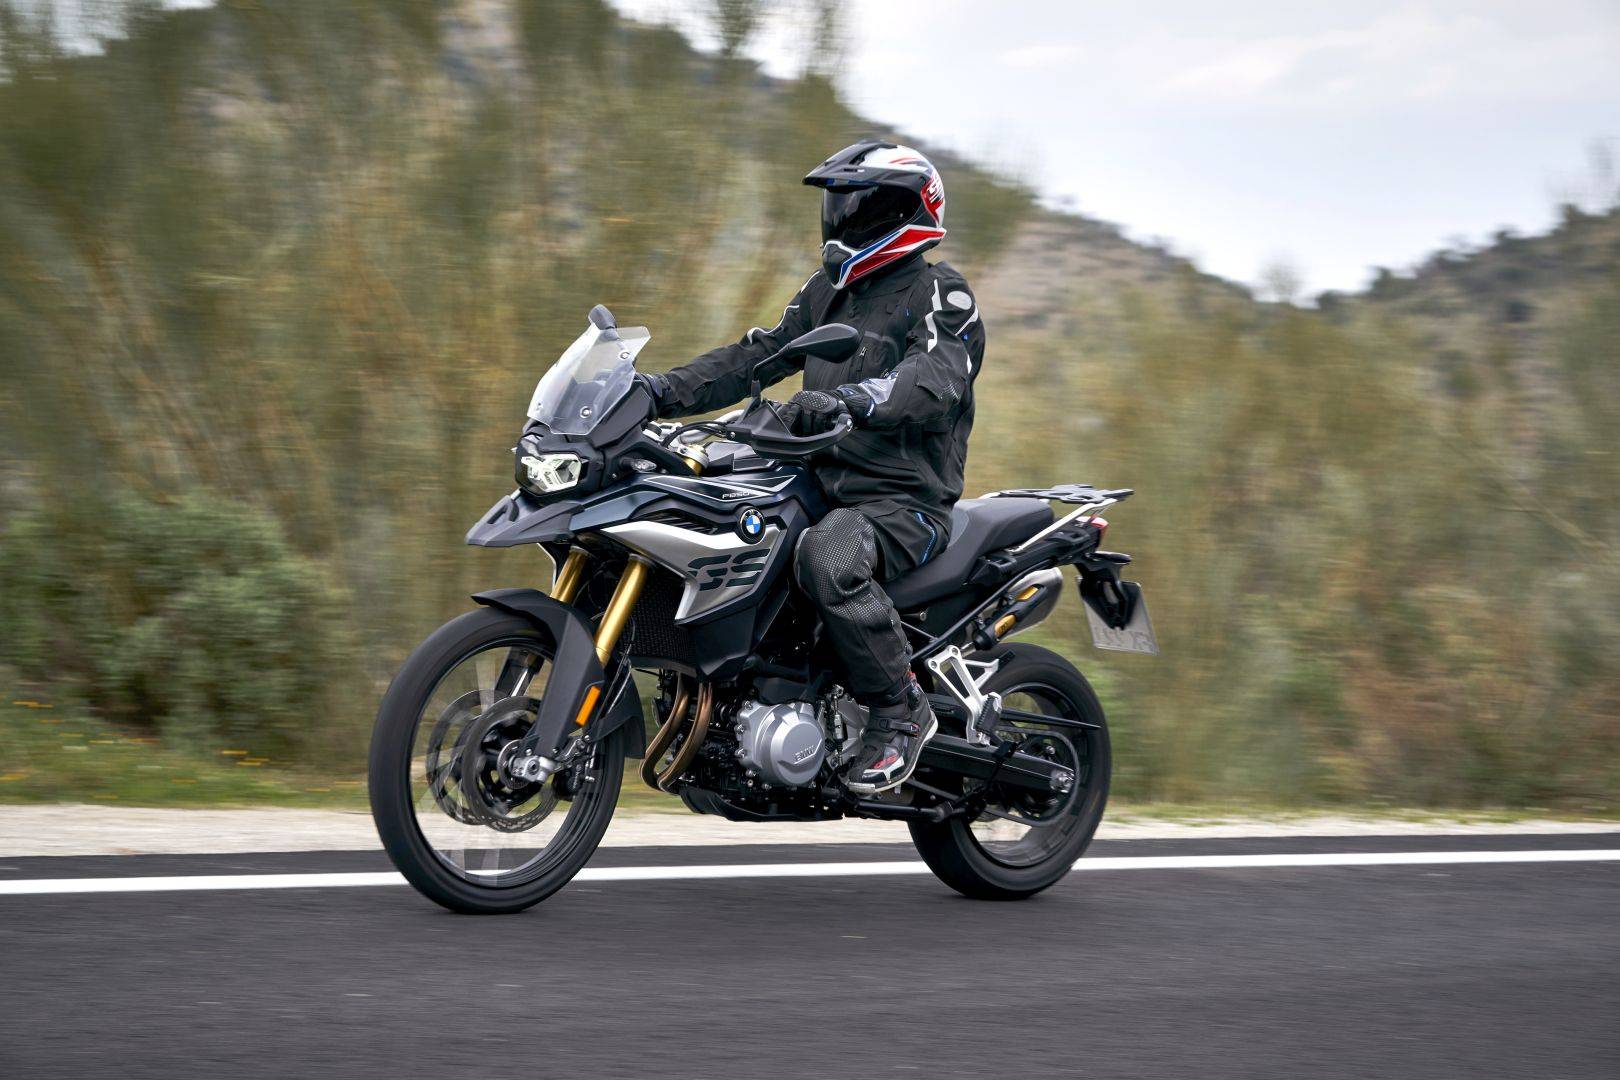 ▷ bmw motorrad f 850 gs adventure 2019 manual, bmw motorrad f 850 gs adventure 2019 motorcycle руководство пользователя | guidessimo.com